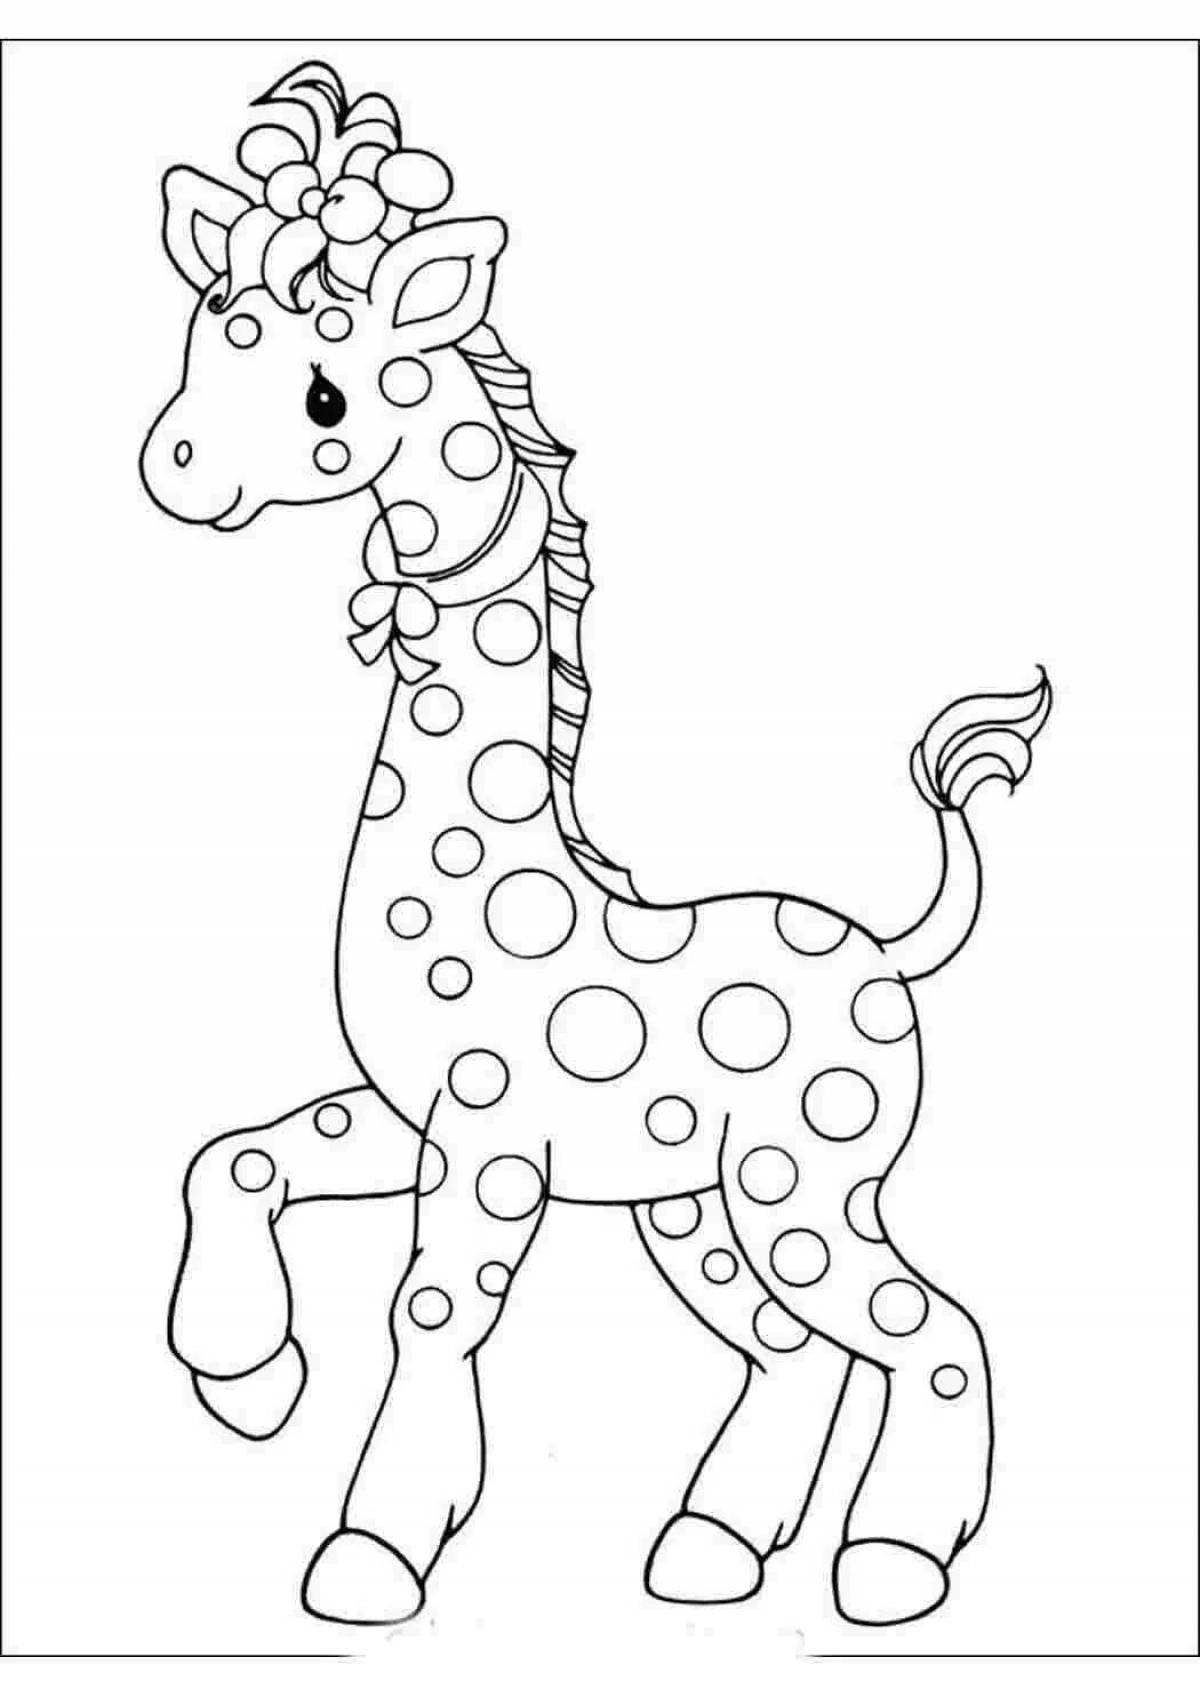 Изысканная раскраска жирафа для детей